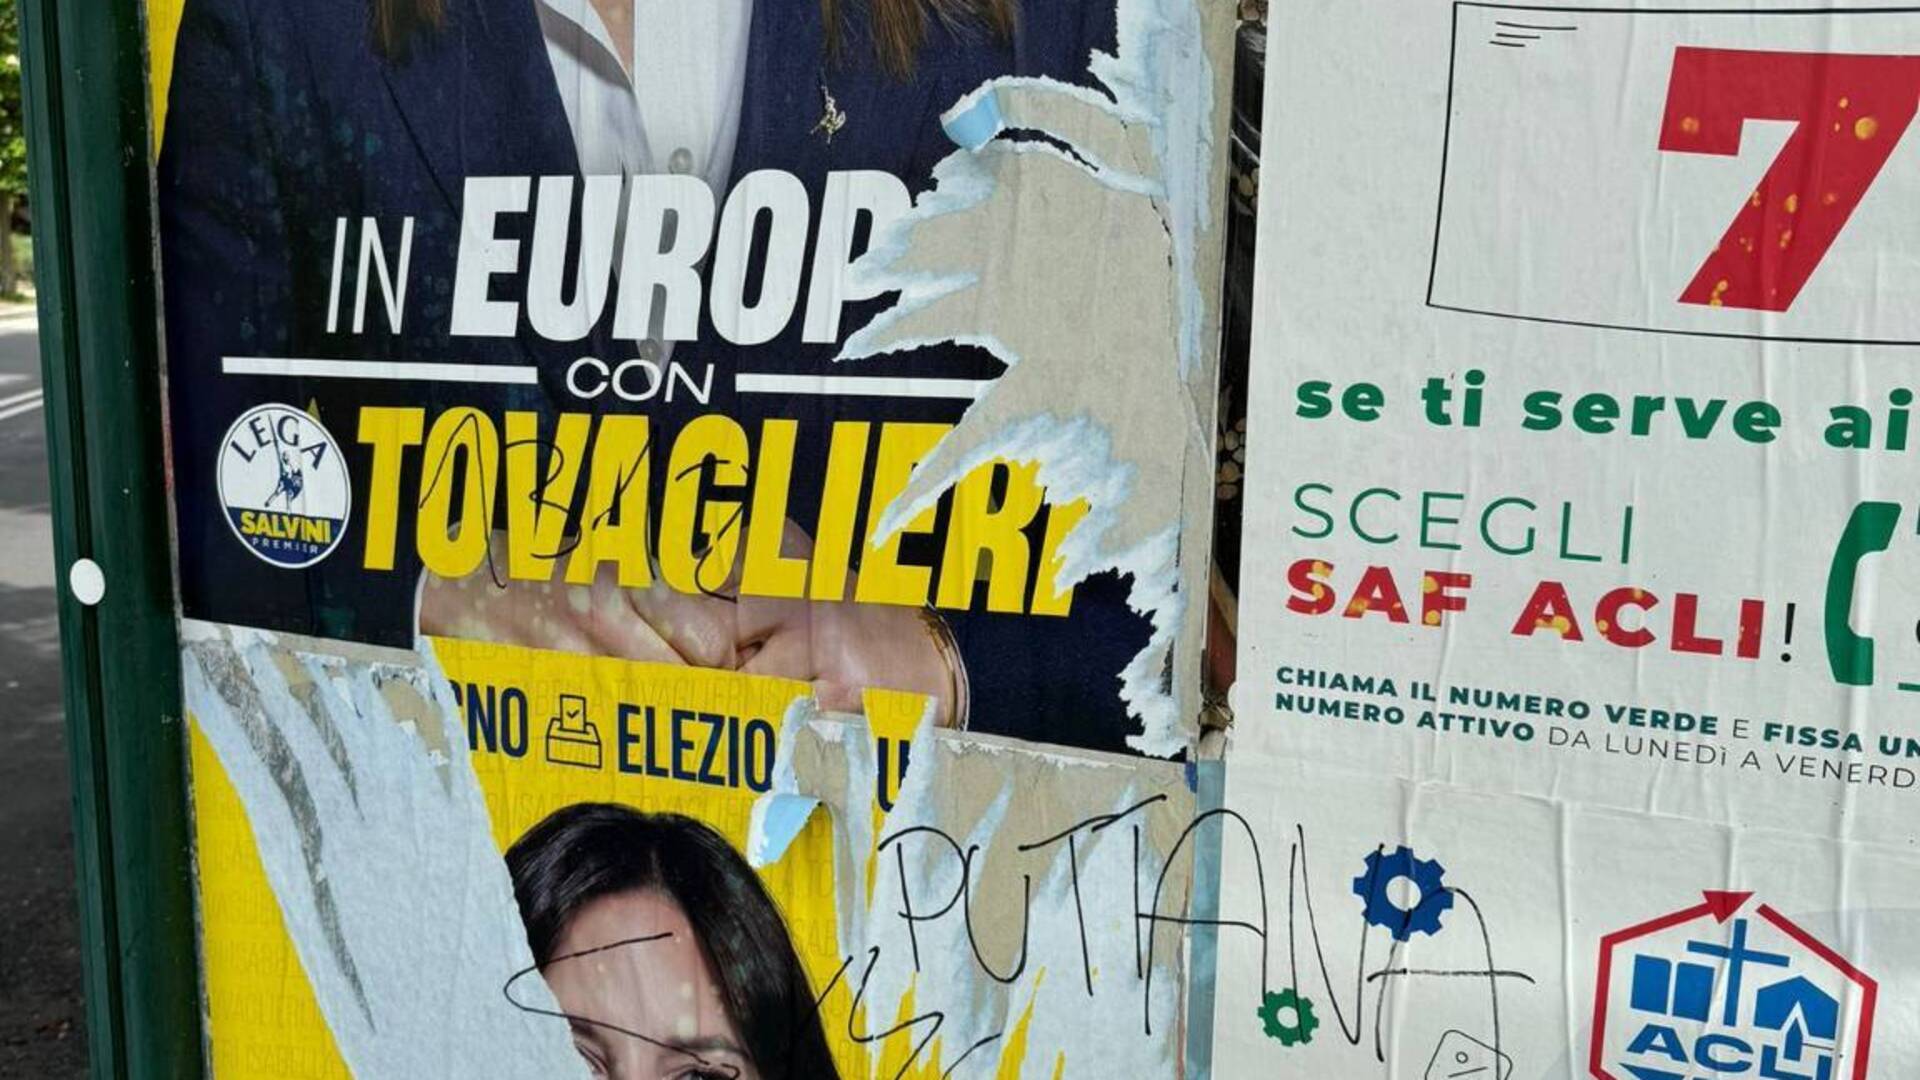 Saronno, minacce sui cartelloni a Tovaglieri, Fi: “Arroganza ingiustificabile”